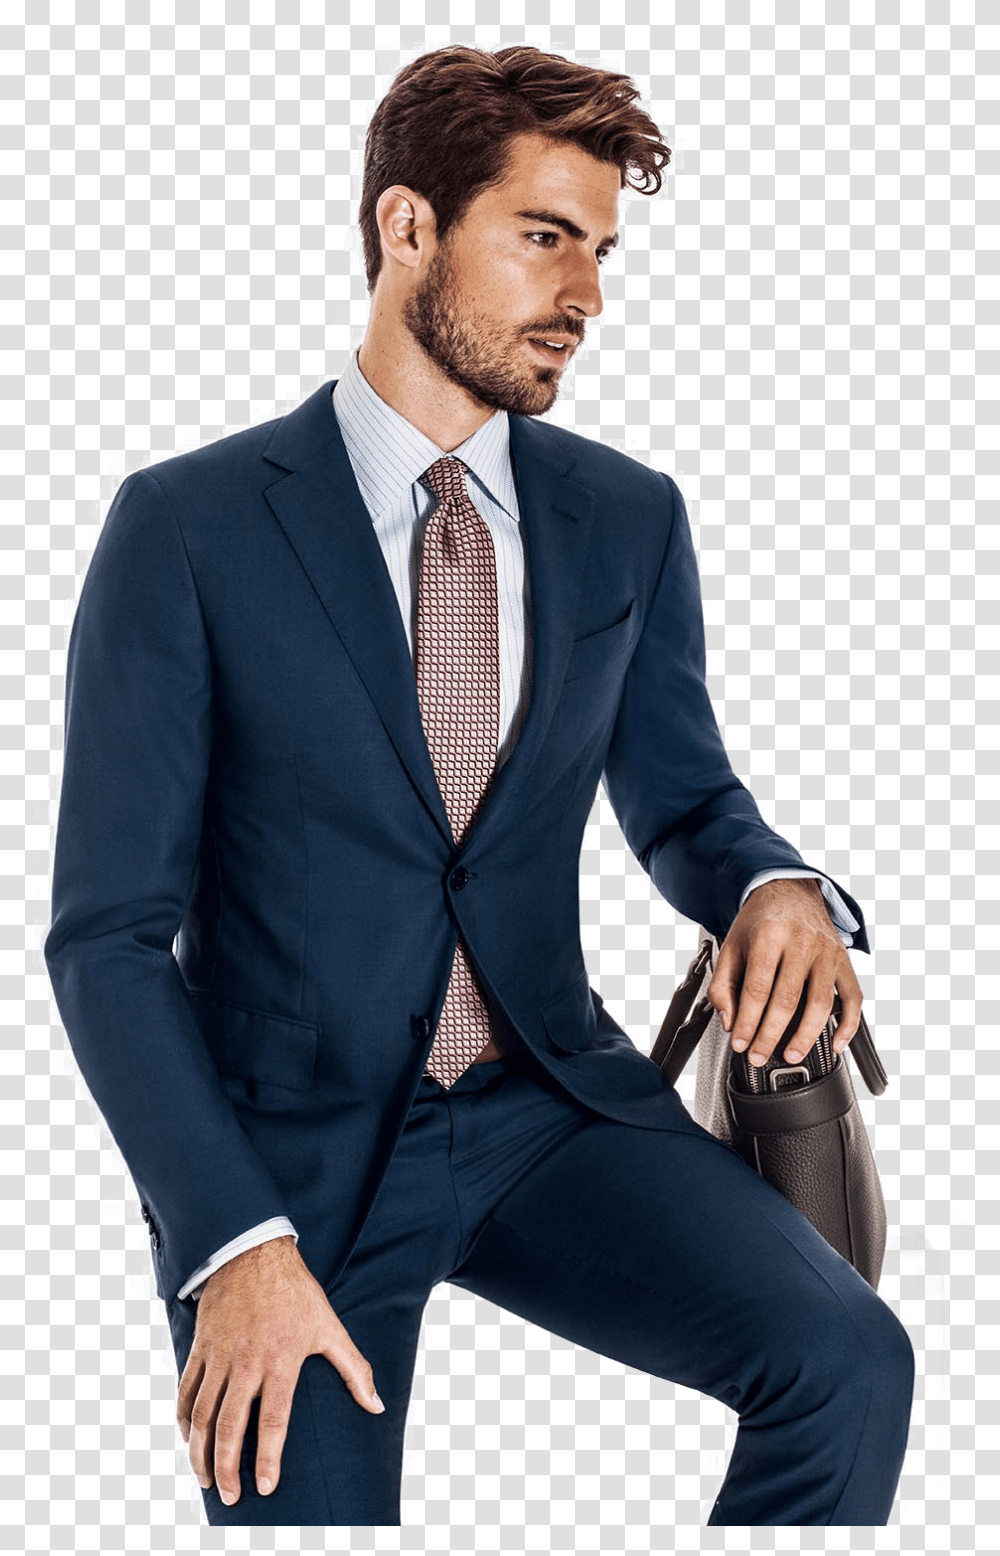 Men Suit Image Business Suit, Apparel, Tie, Accessories Transparent Png